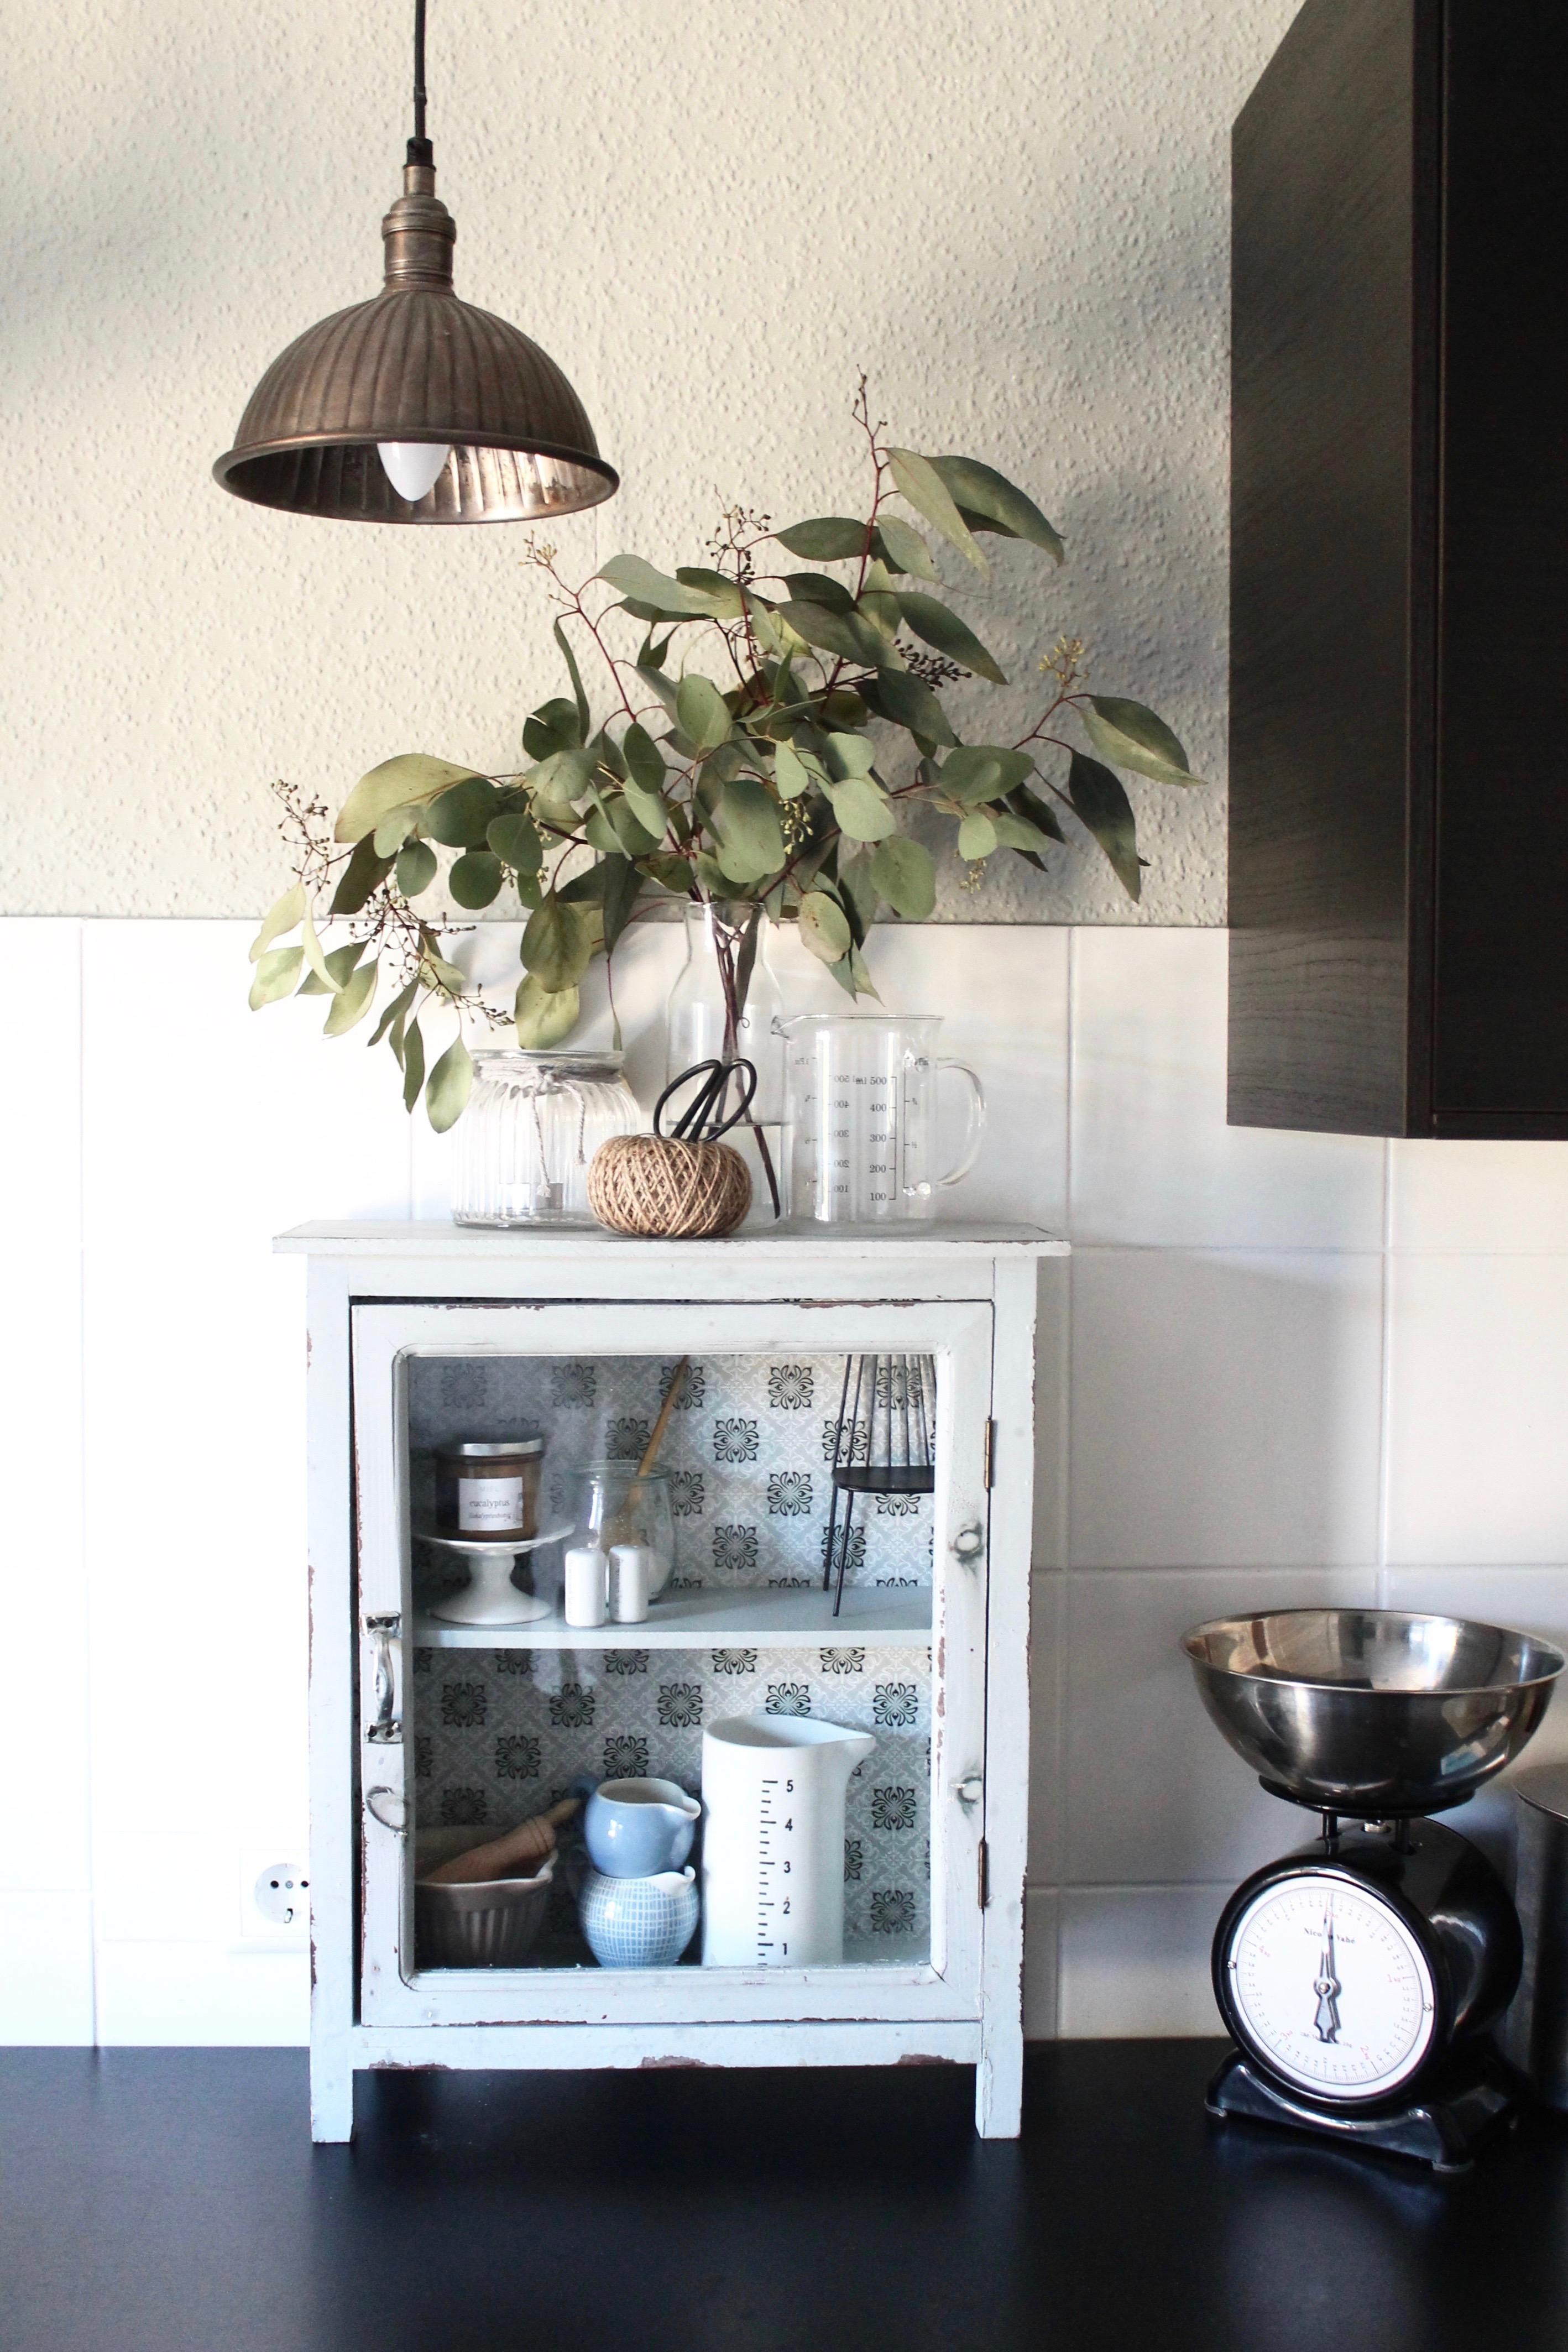 Kitchen details
#blackkitchen#vintage#eukalyptus